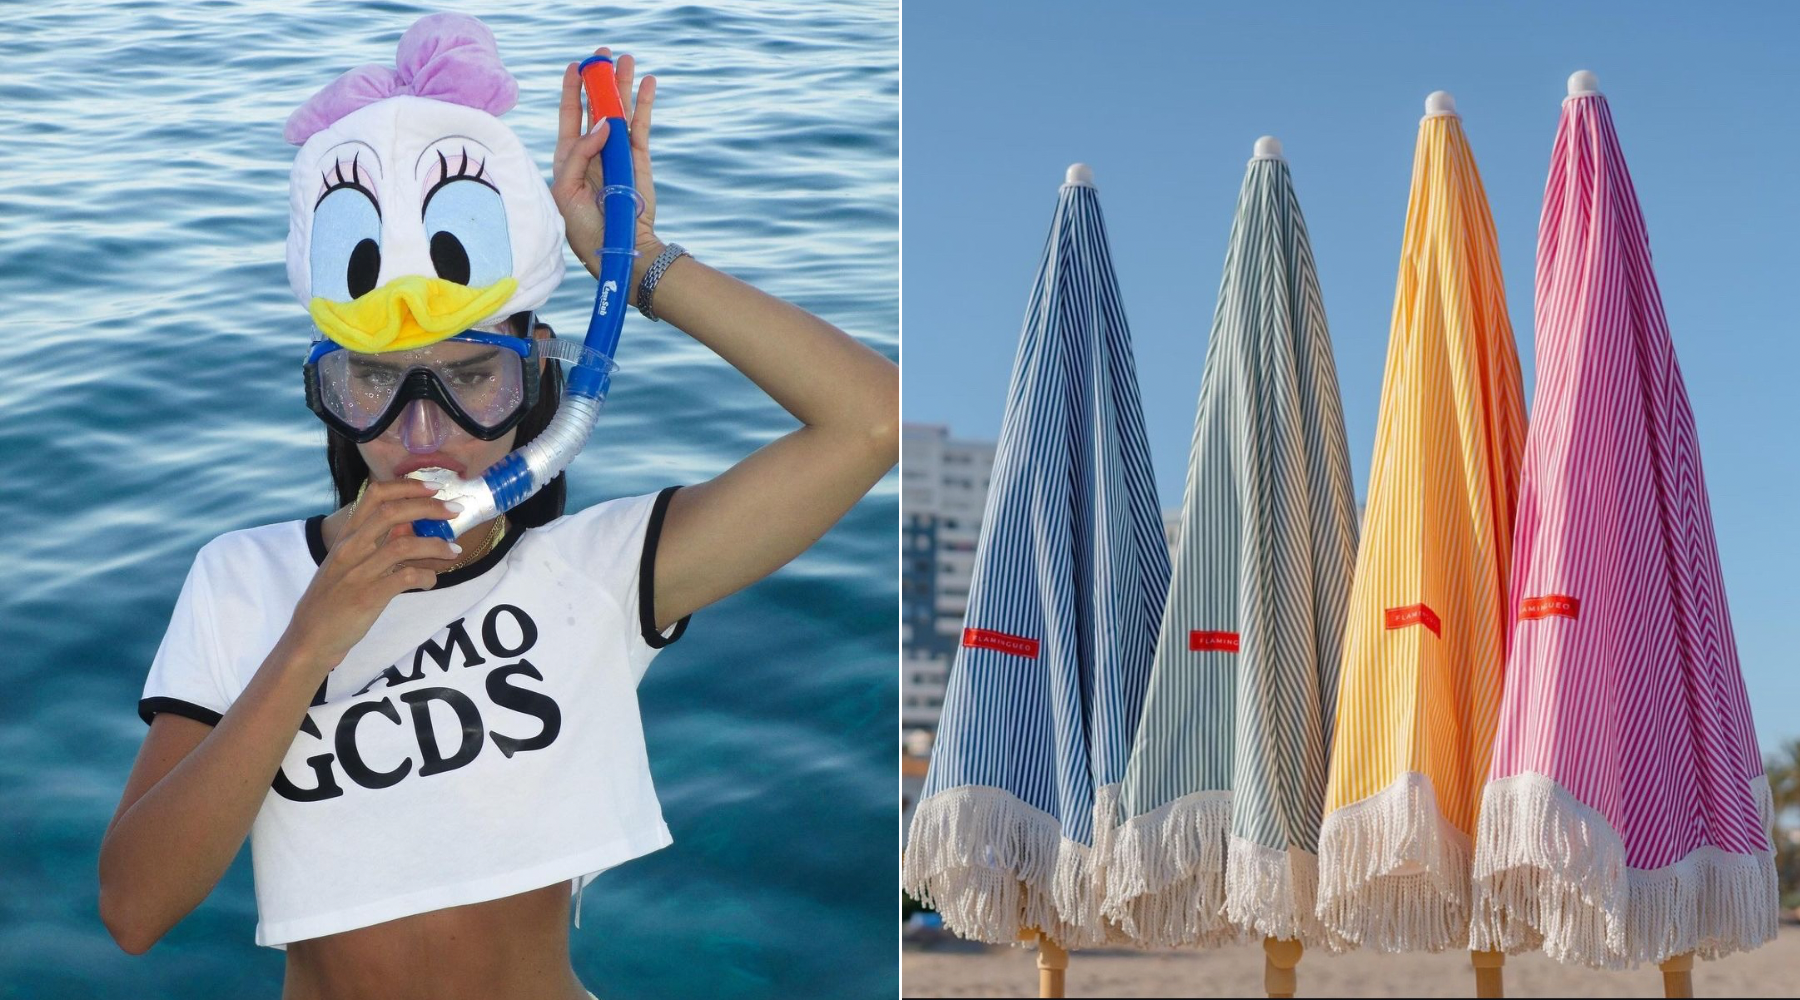 Flamingueo: blagovna znamka, ki stoji za modnimi pripomočki za na plažo in bazen